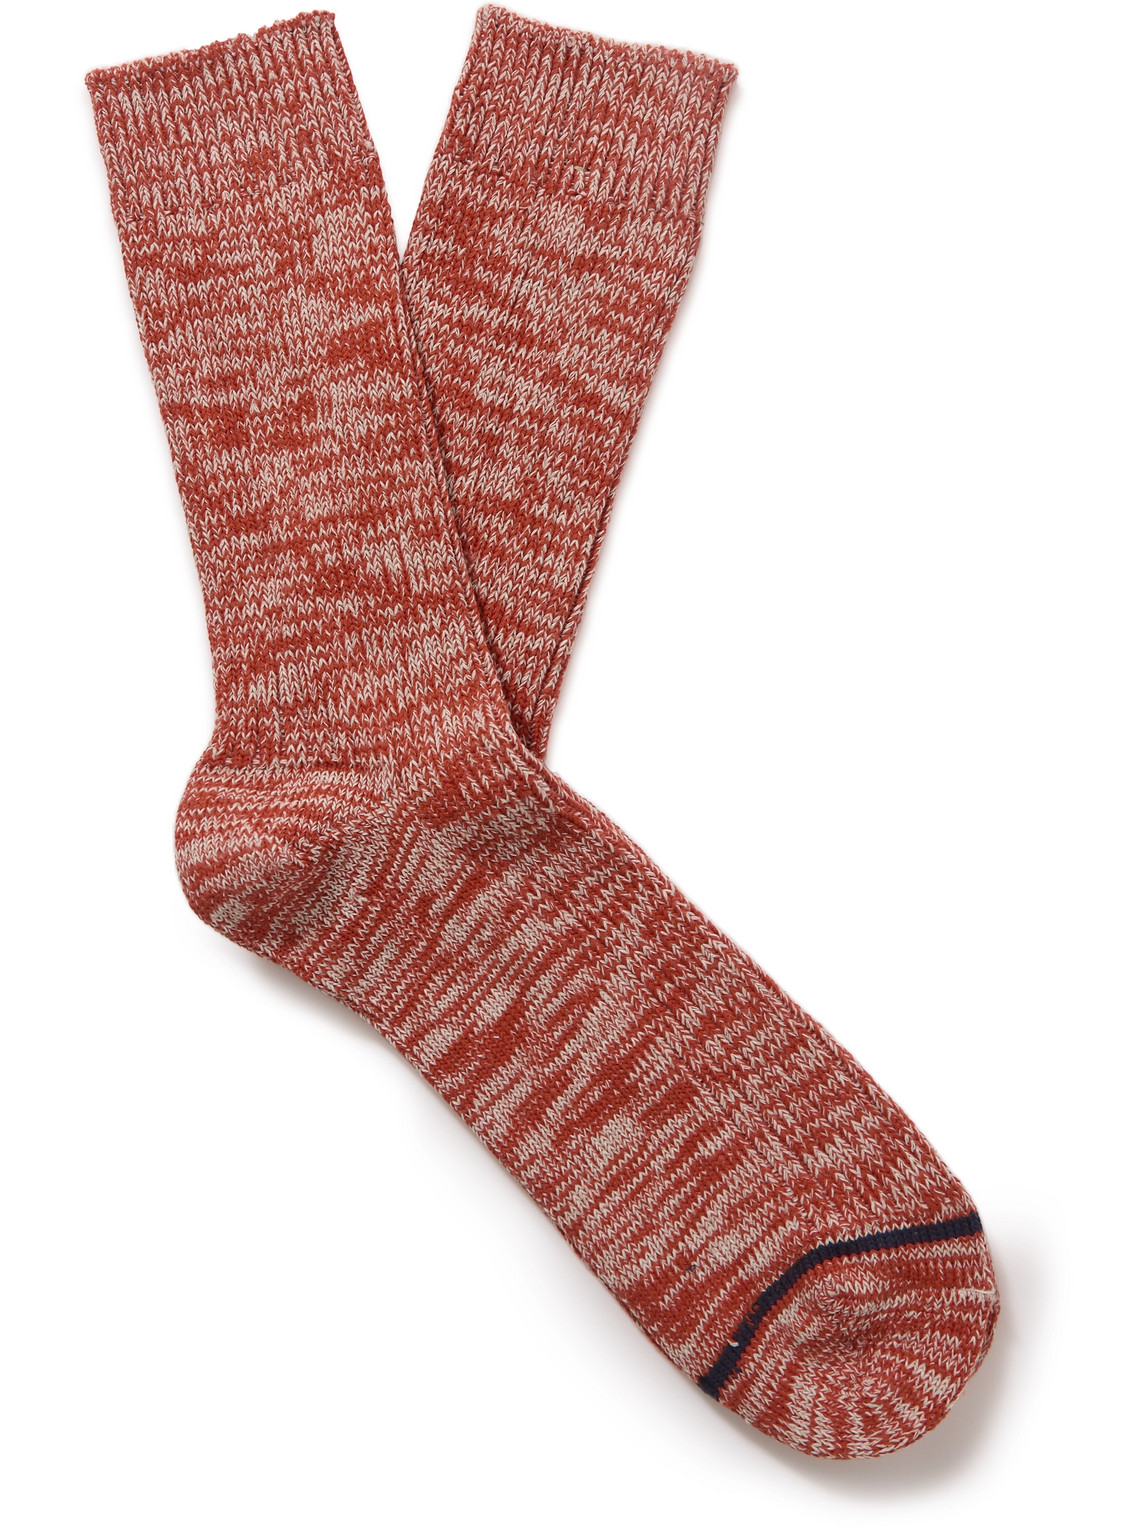 Nudie Jeans - Knitted Socks - Men - Red von Nudie Jeans